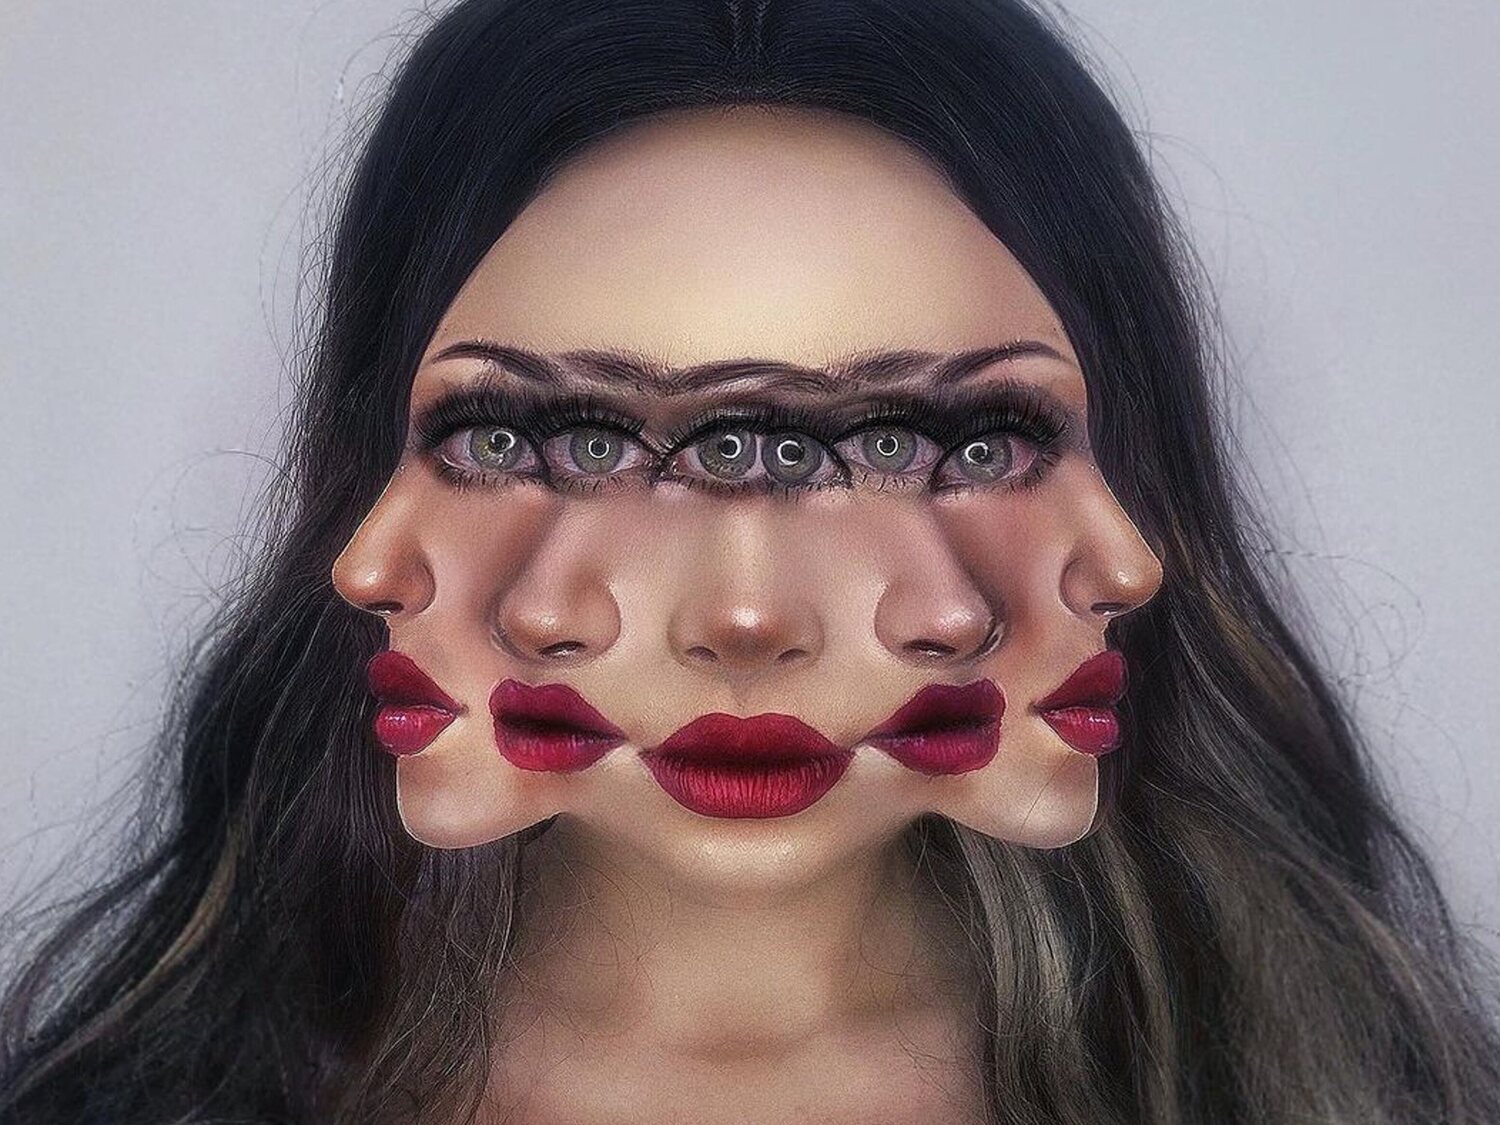 Las increíbles ilusiones ópticas de esta artista colombiana hechas con maquillaje